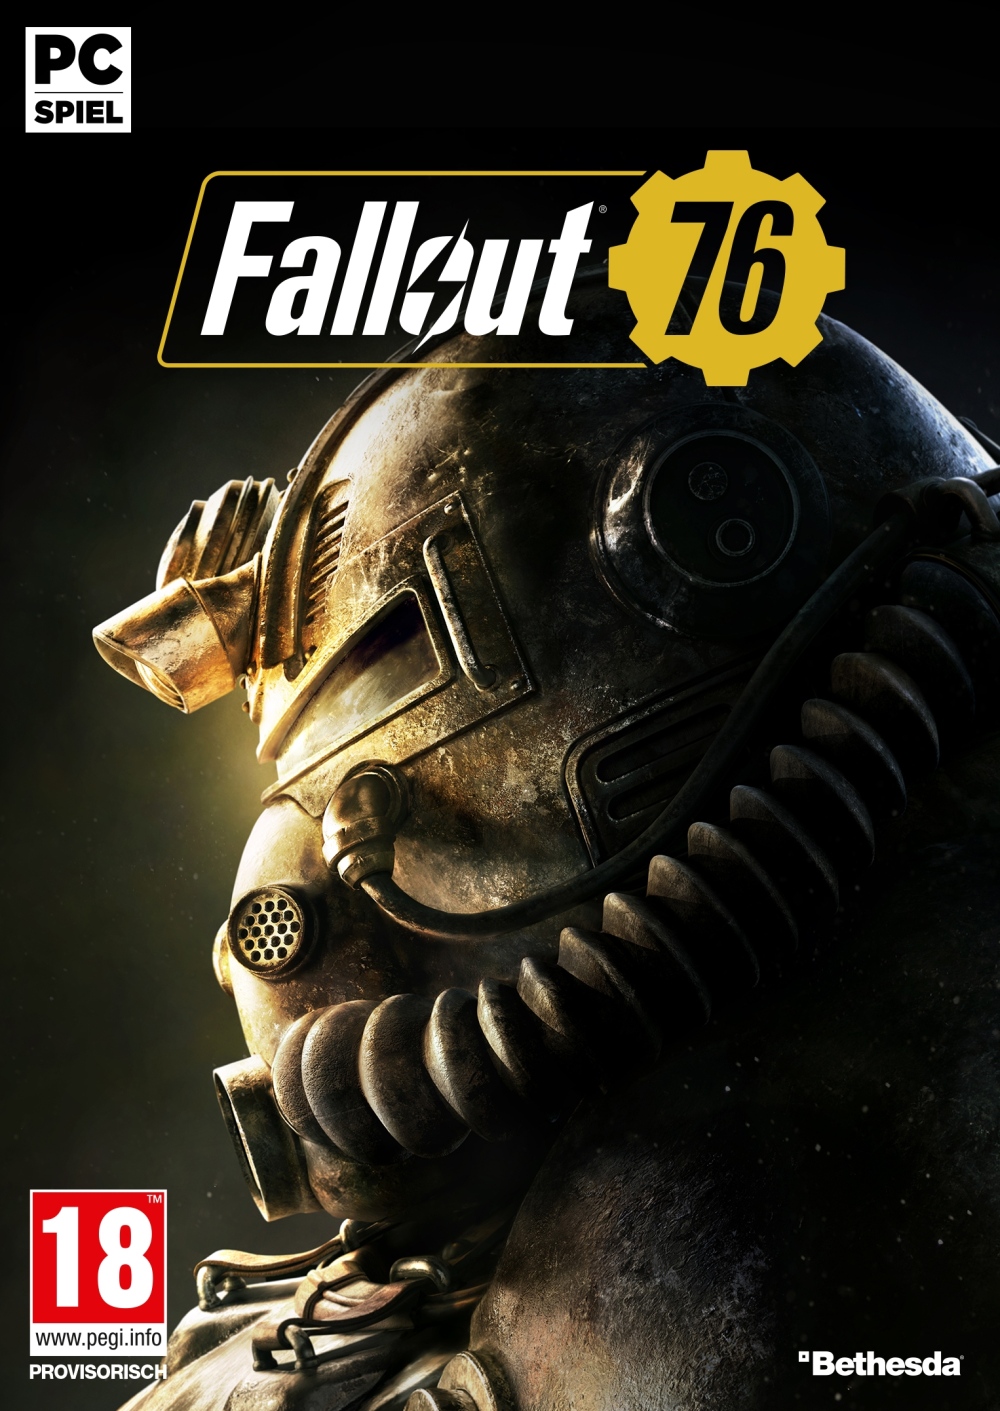 Bote de Fallout 76